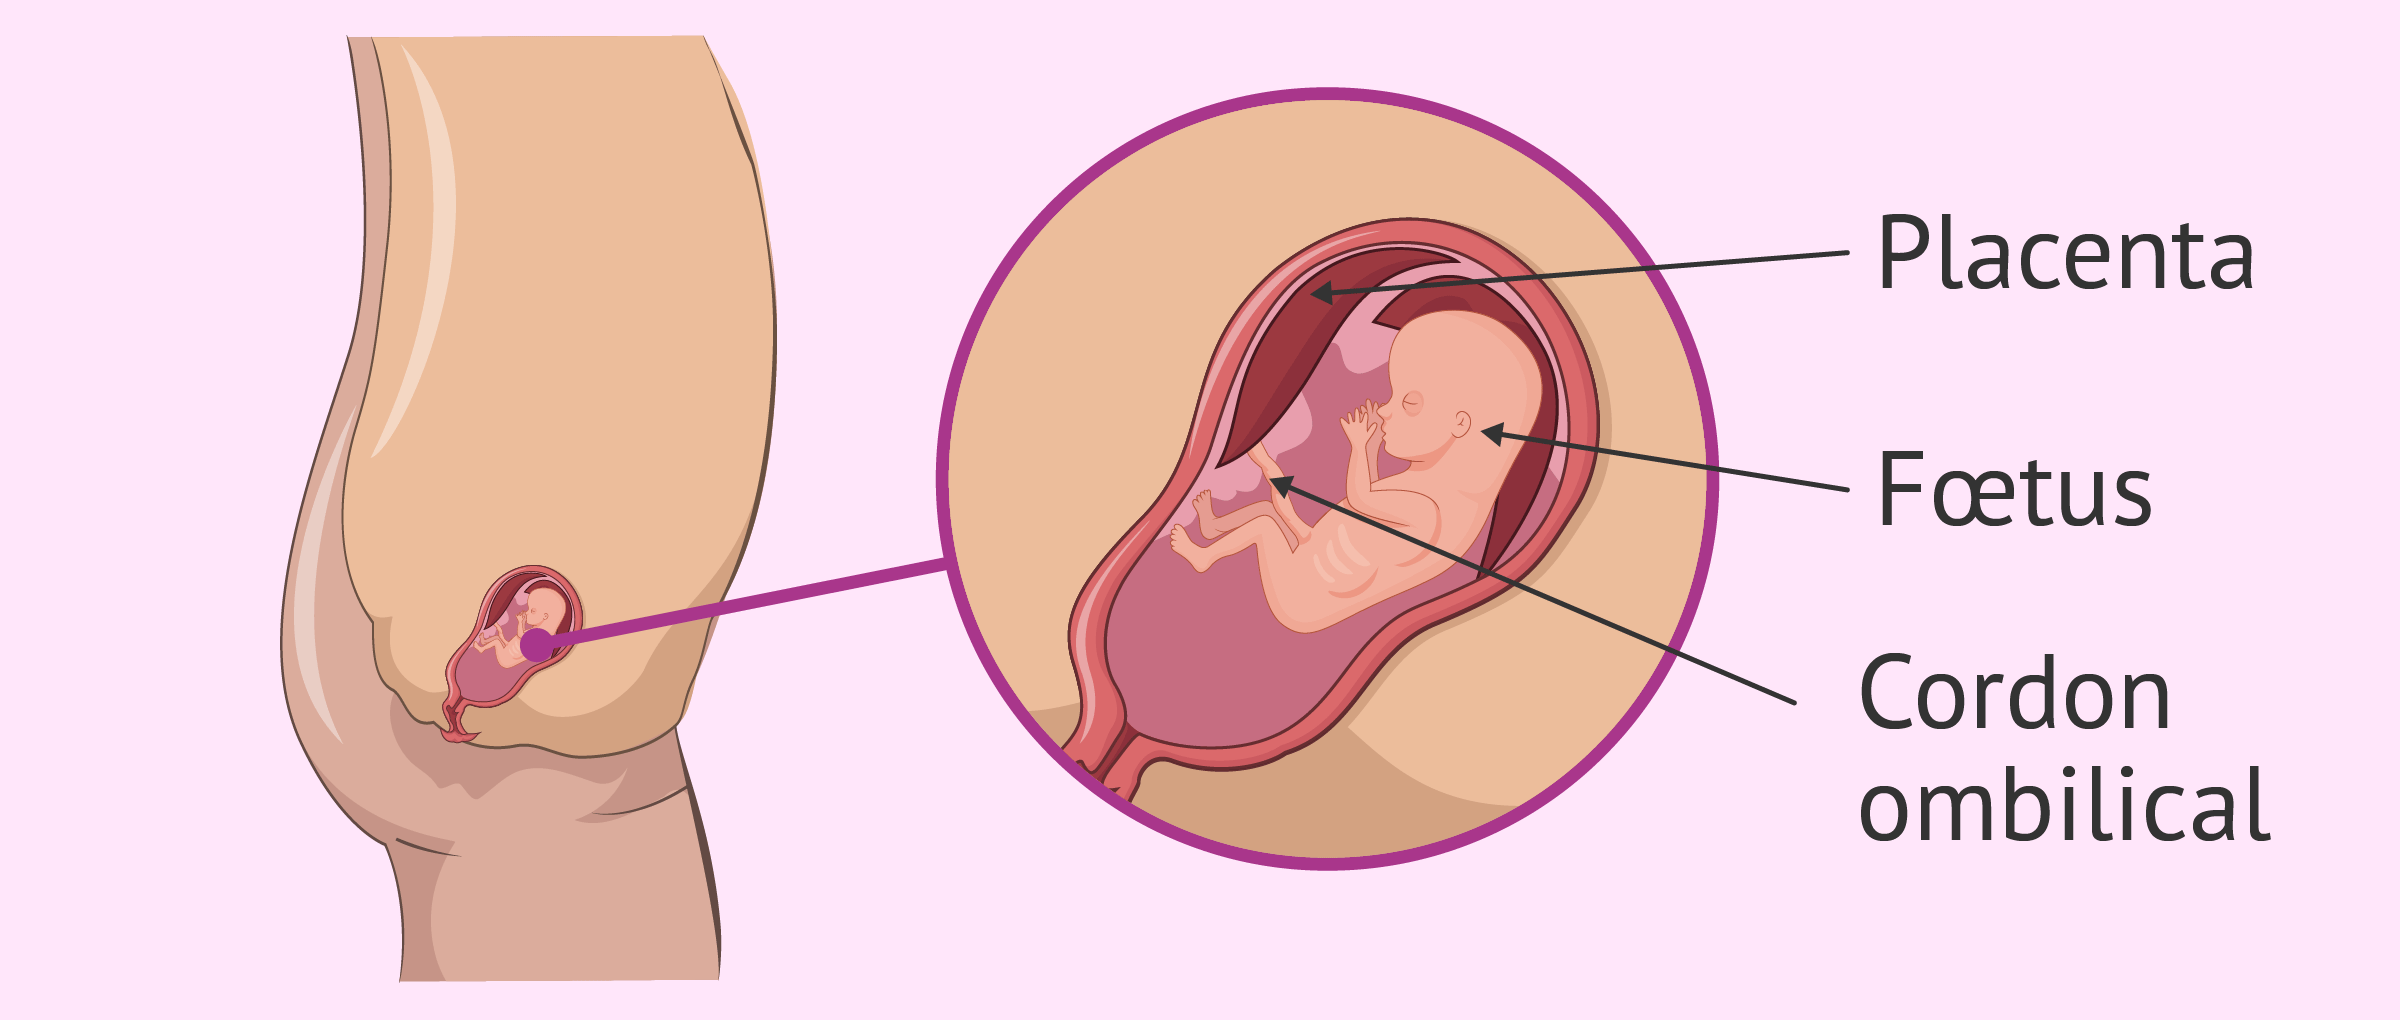 Formation du cordon ombilical pendant la semaine 11 de grossesse